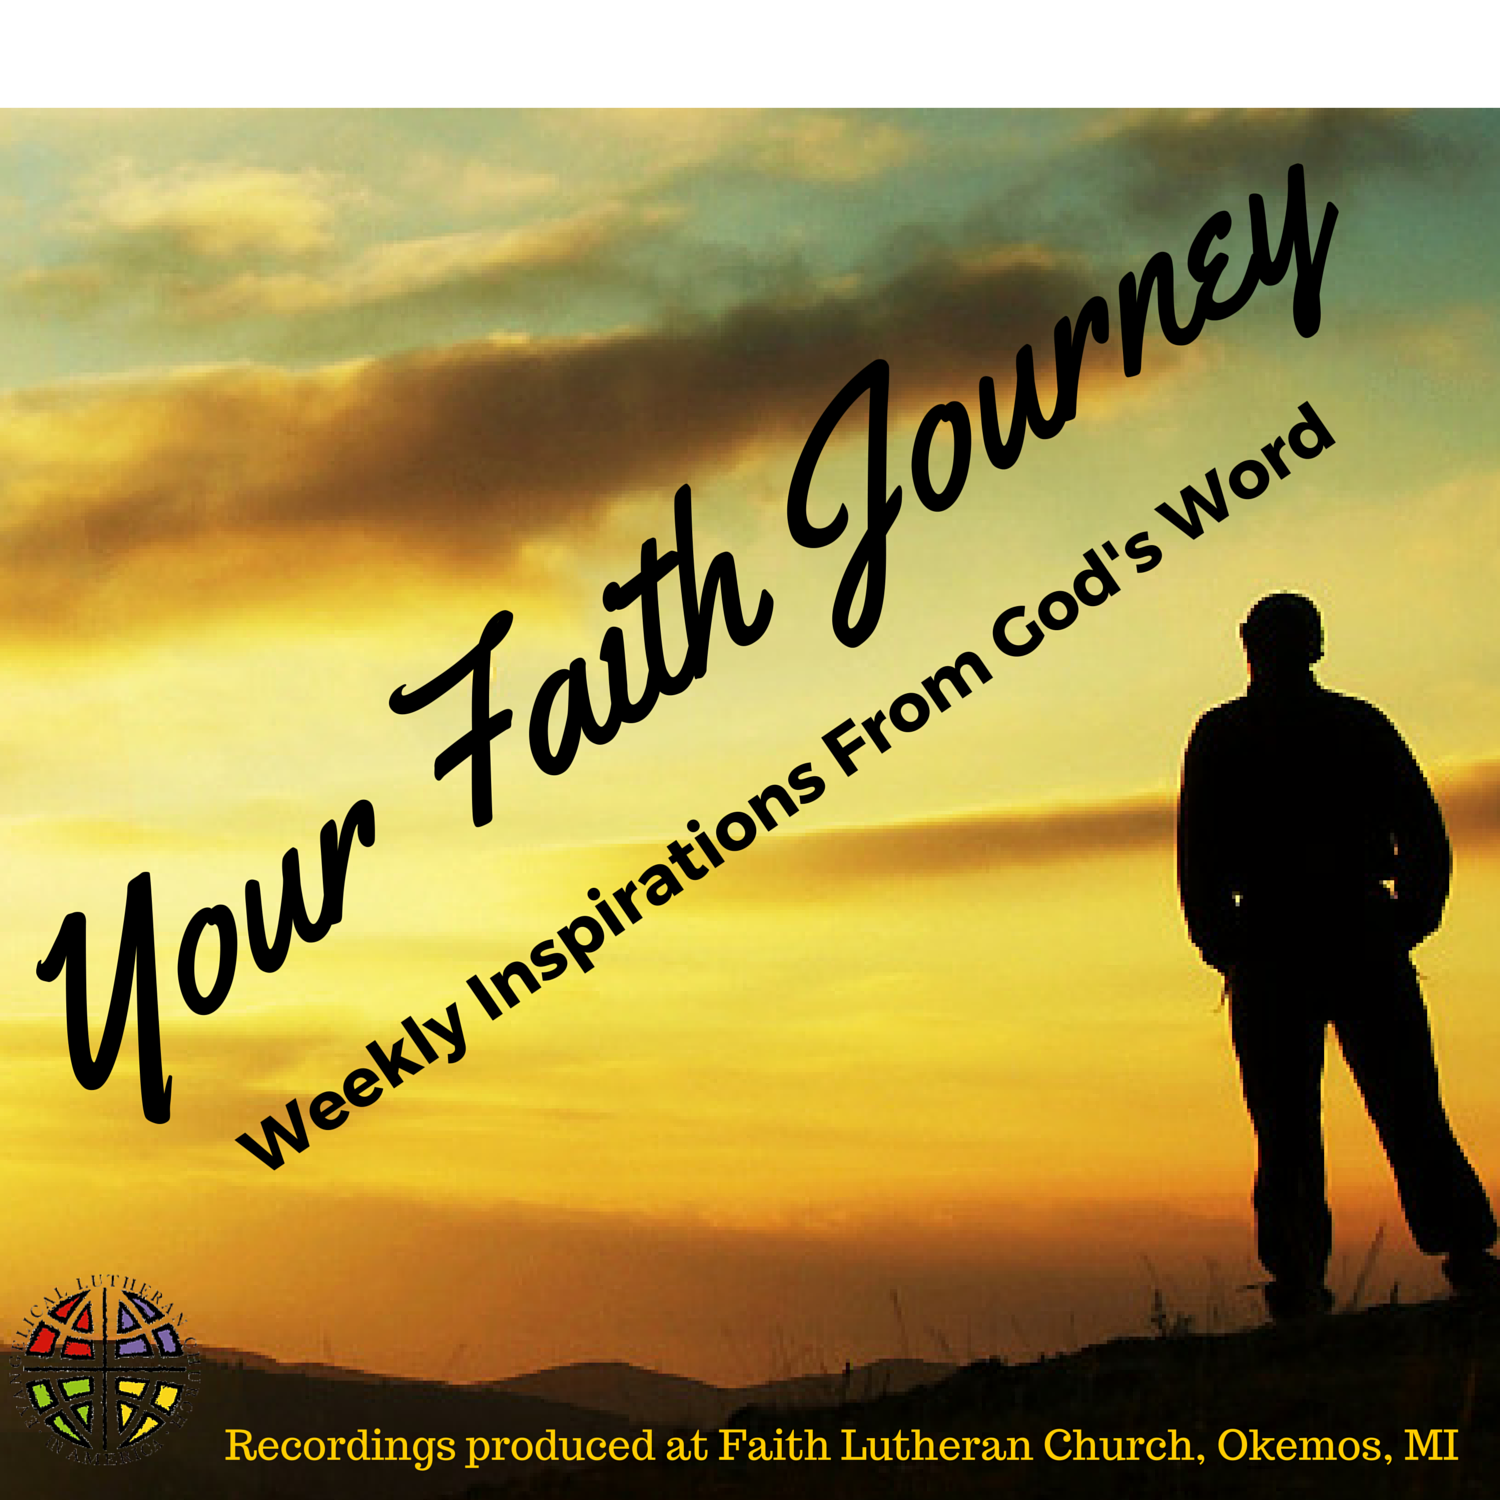 reflection on faith journey